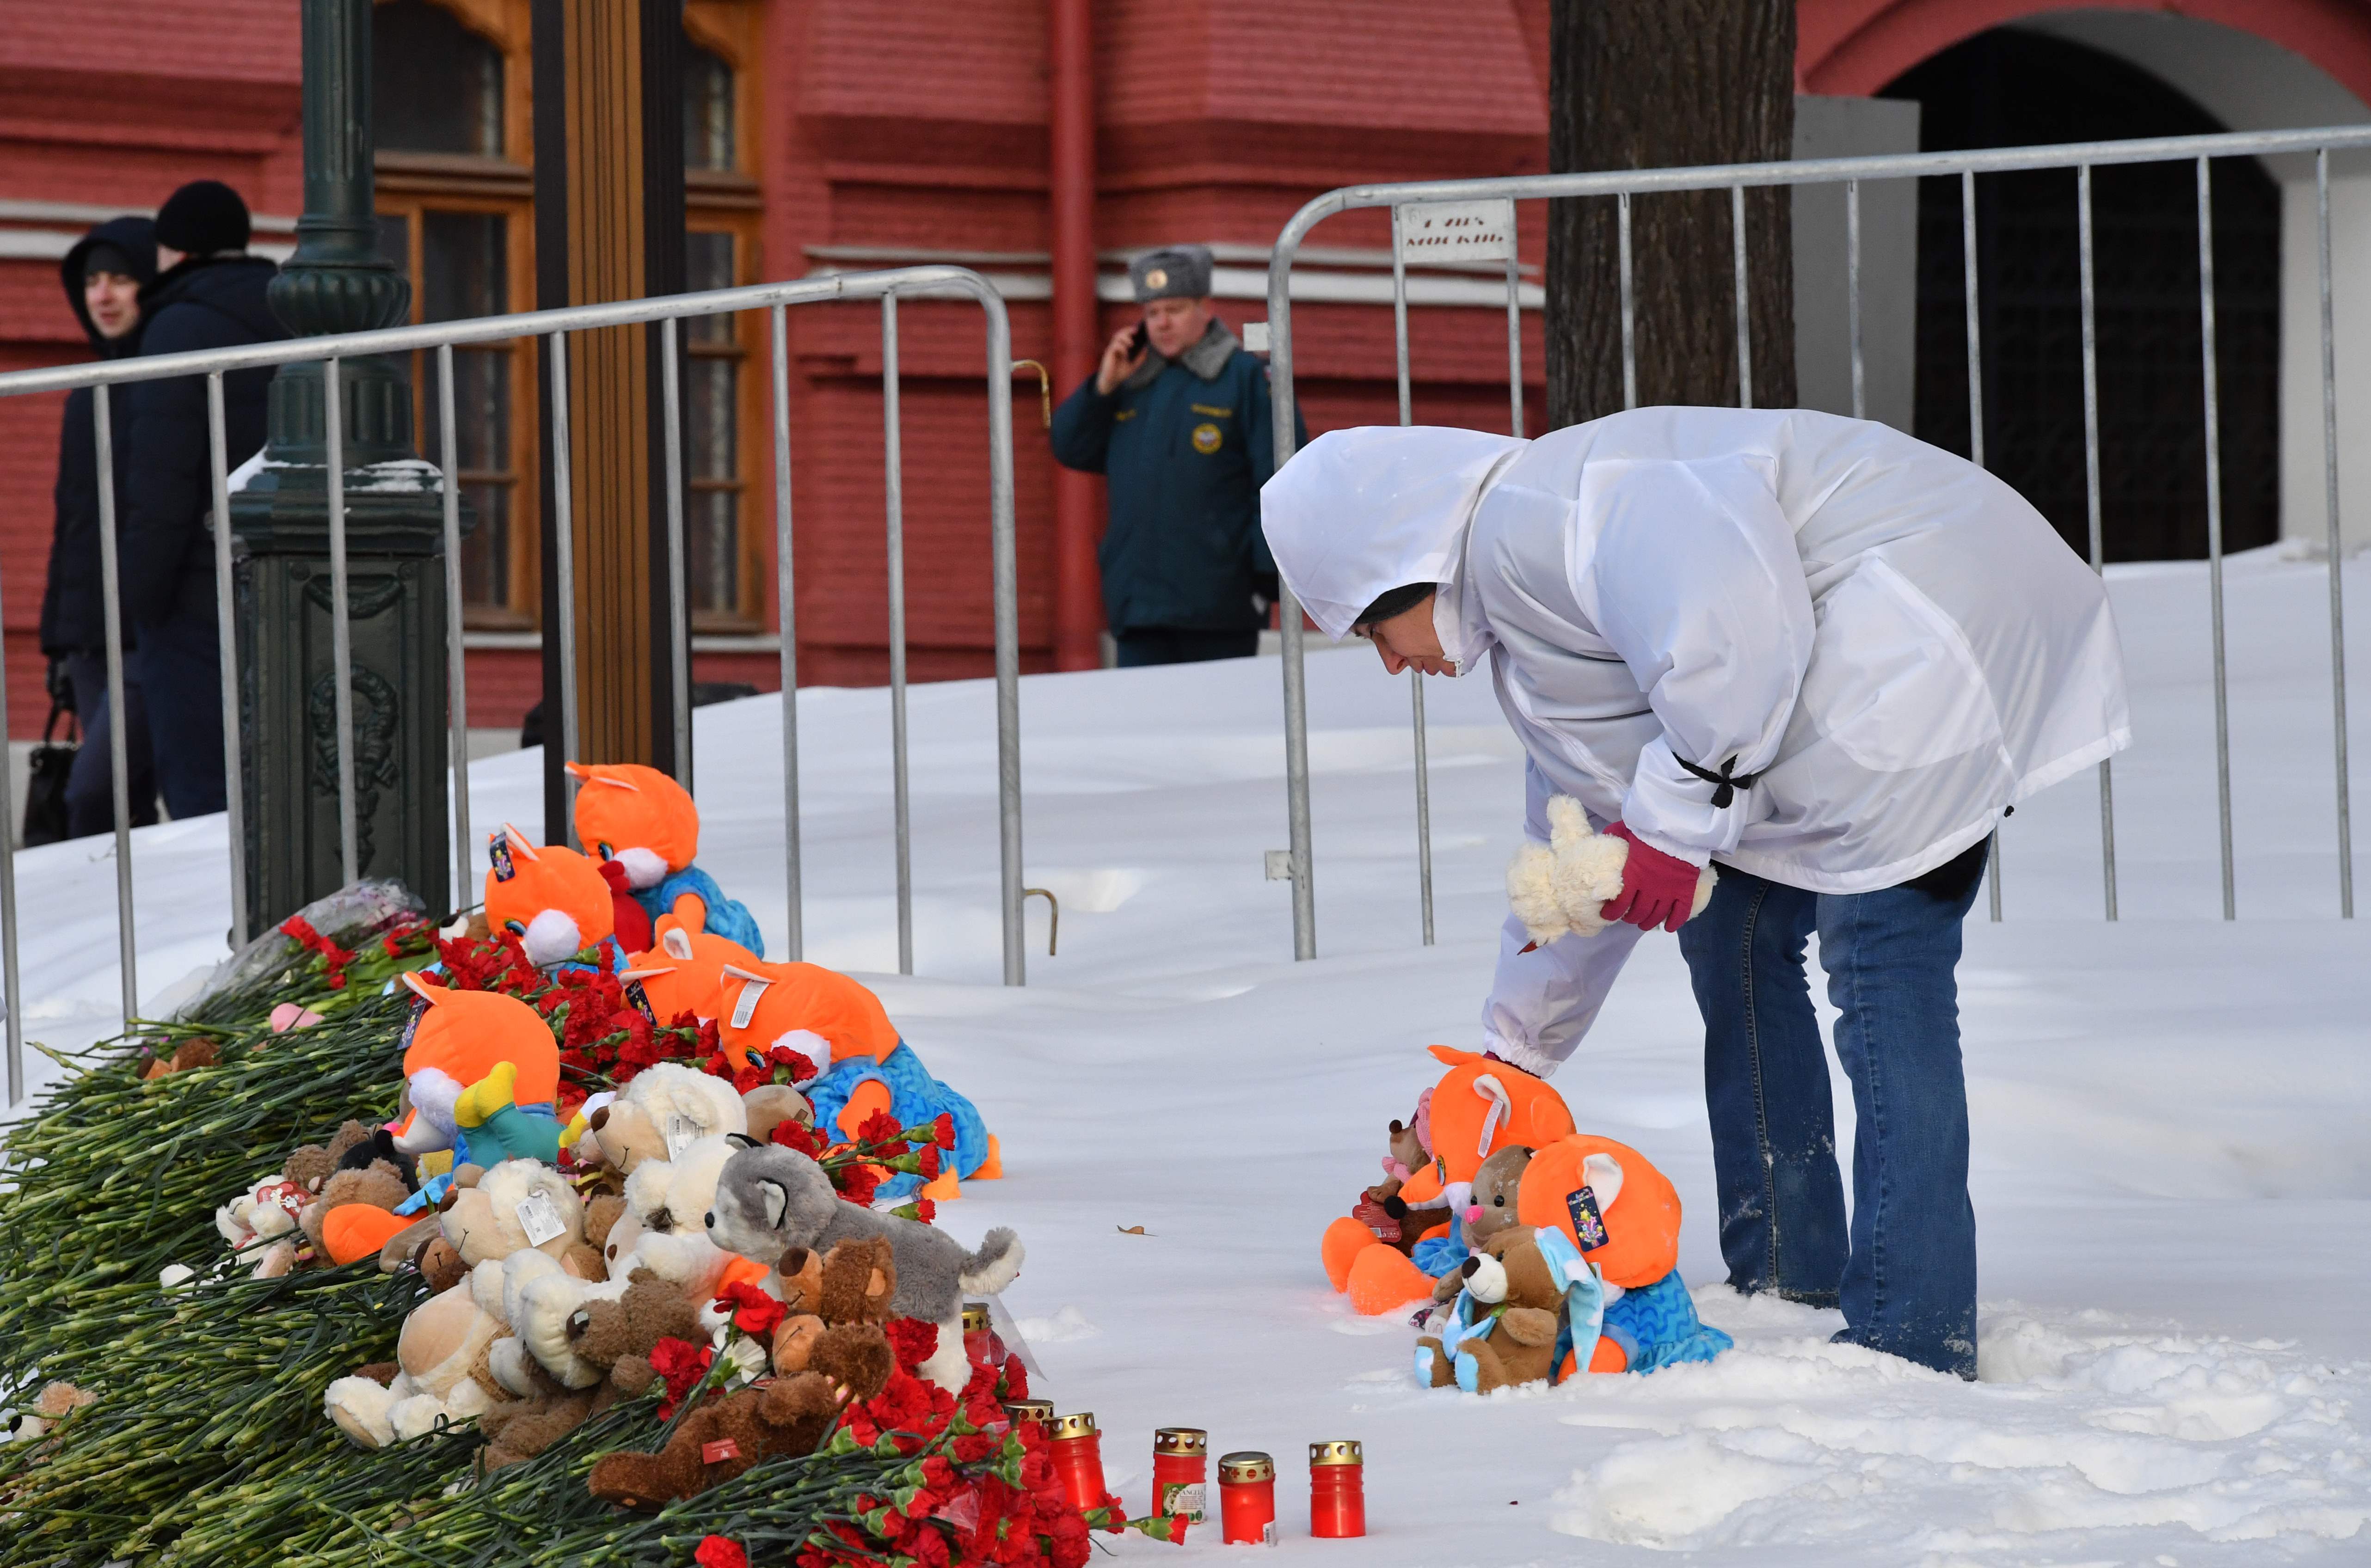 أحد المواطنين يضع الورود تأبينا للضحايا